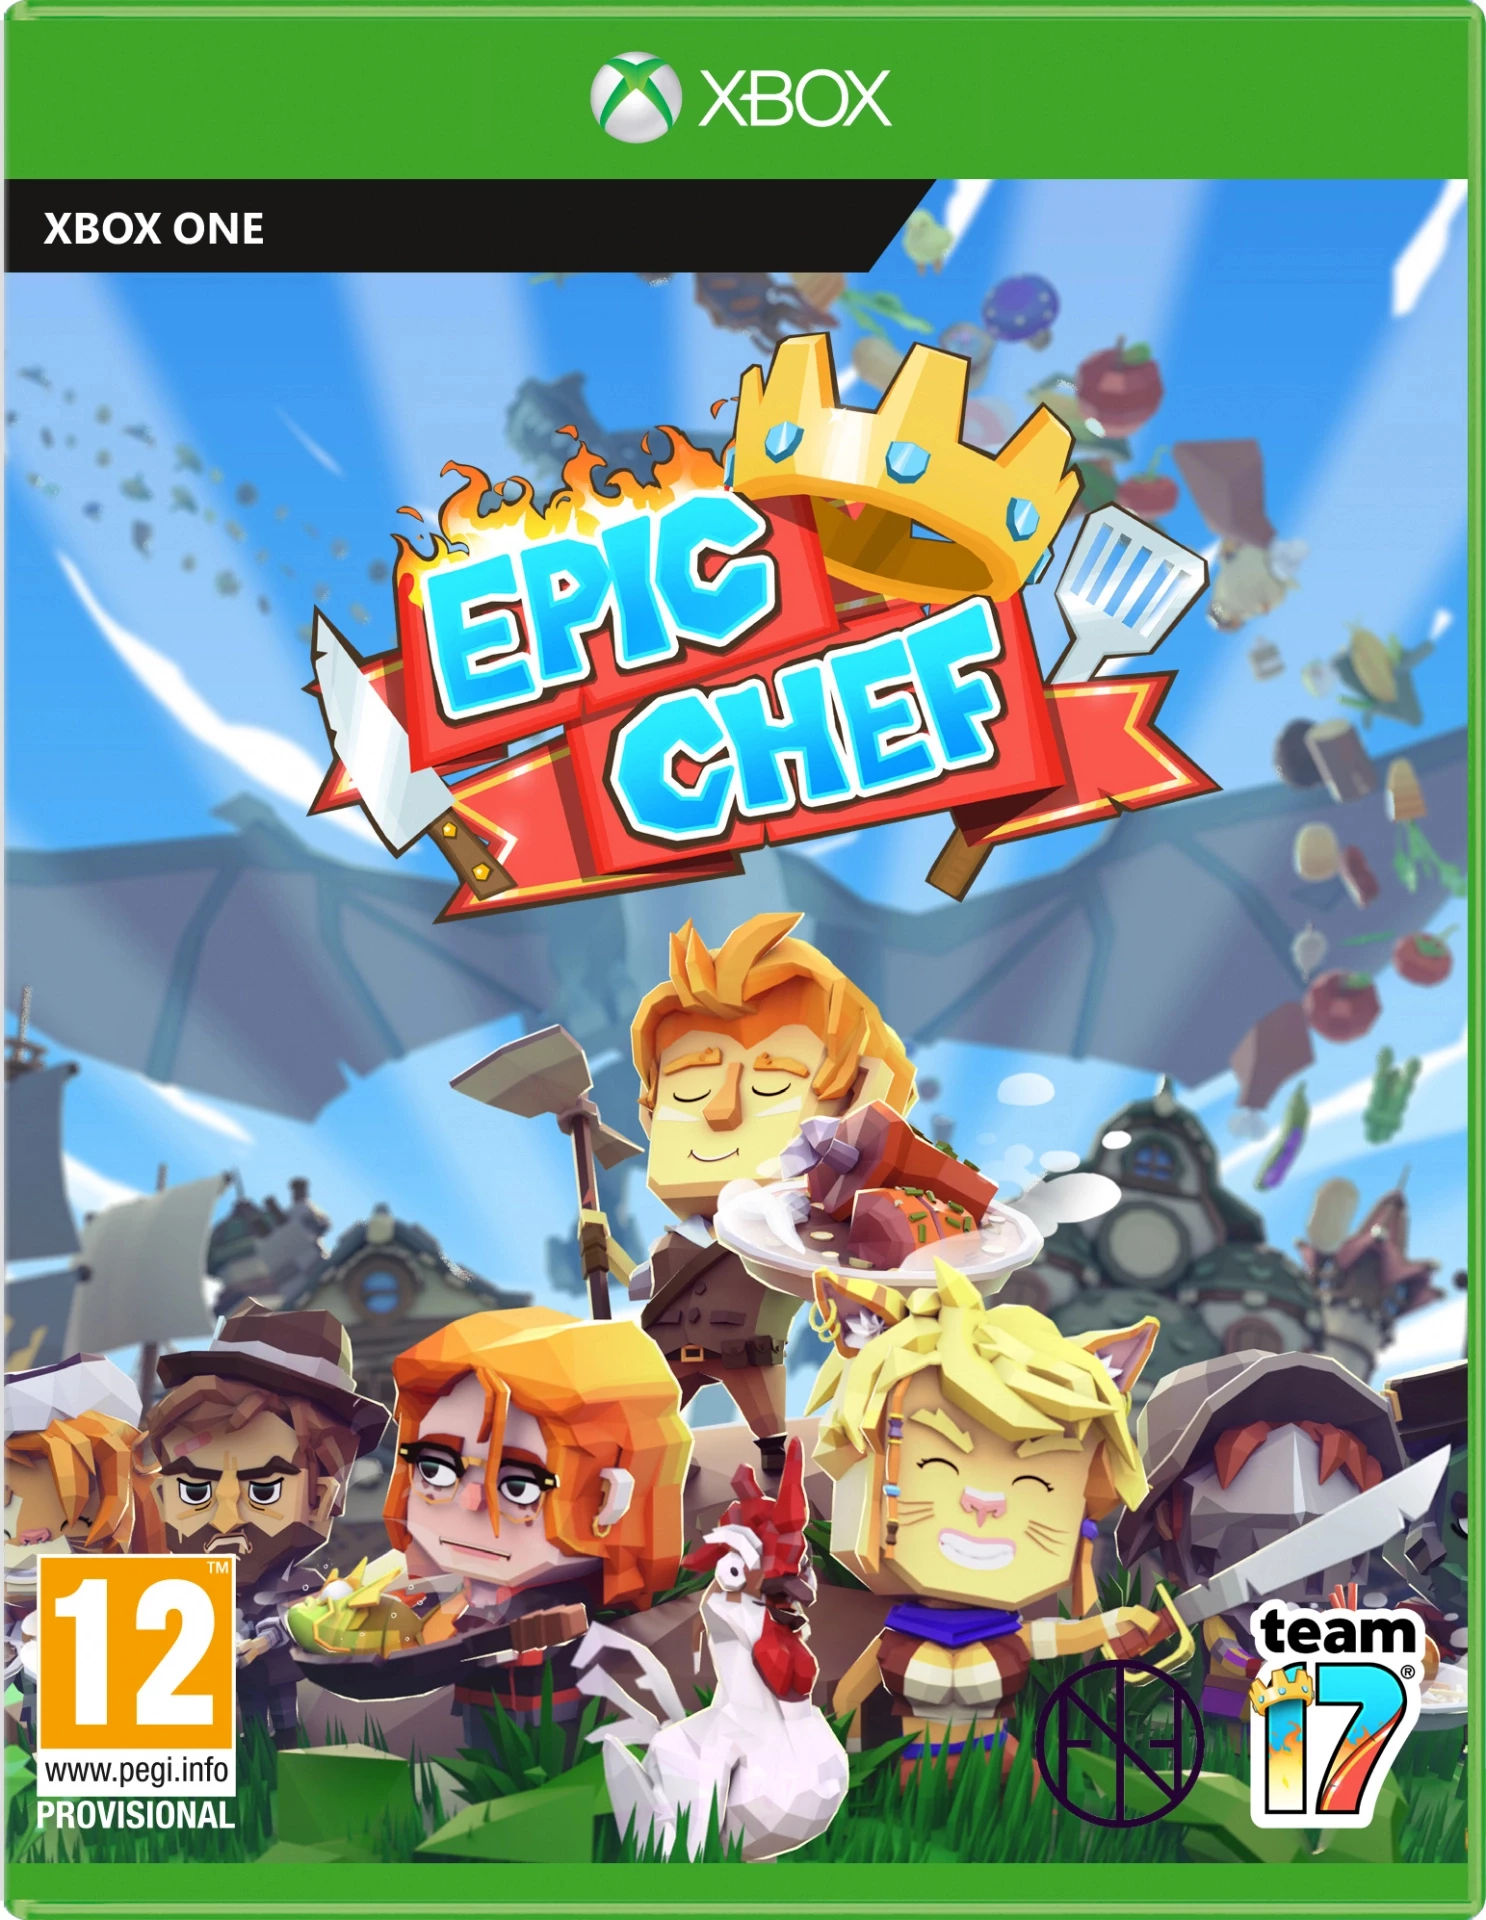 Epic Chef voor de Xbox One preorder plaatsen op nedgame.nl